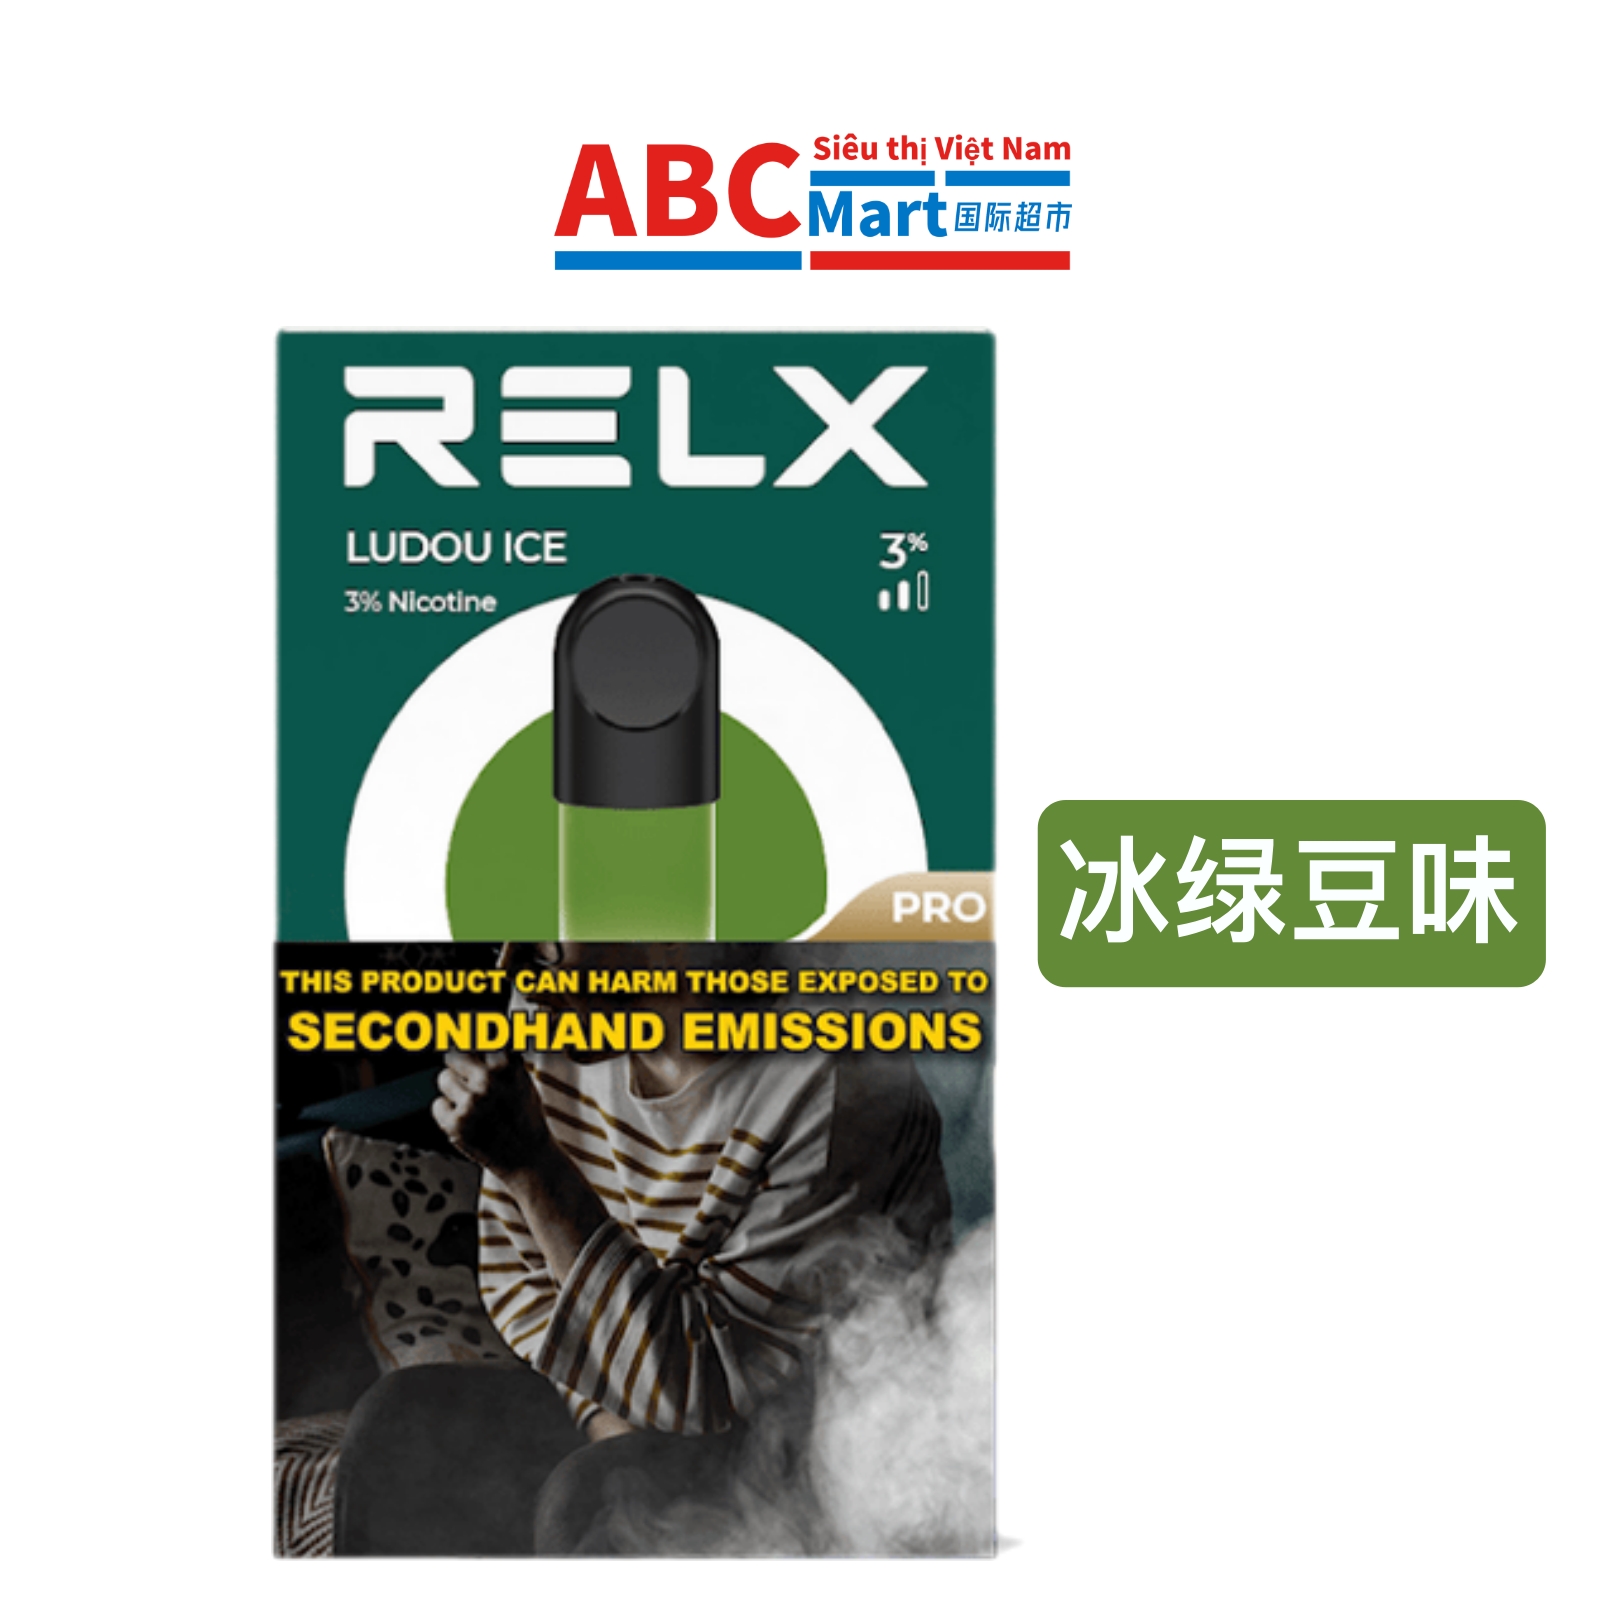 【中国-悦刻通用烟弹冰绿豆味1盒】relx电子烟4-5代ludou ice -ABCMart 国际超市